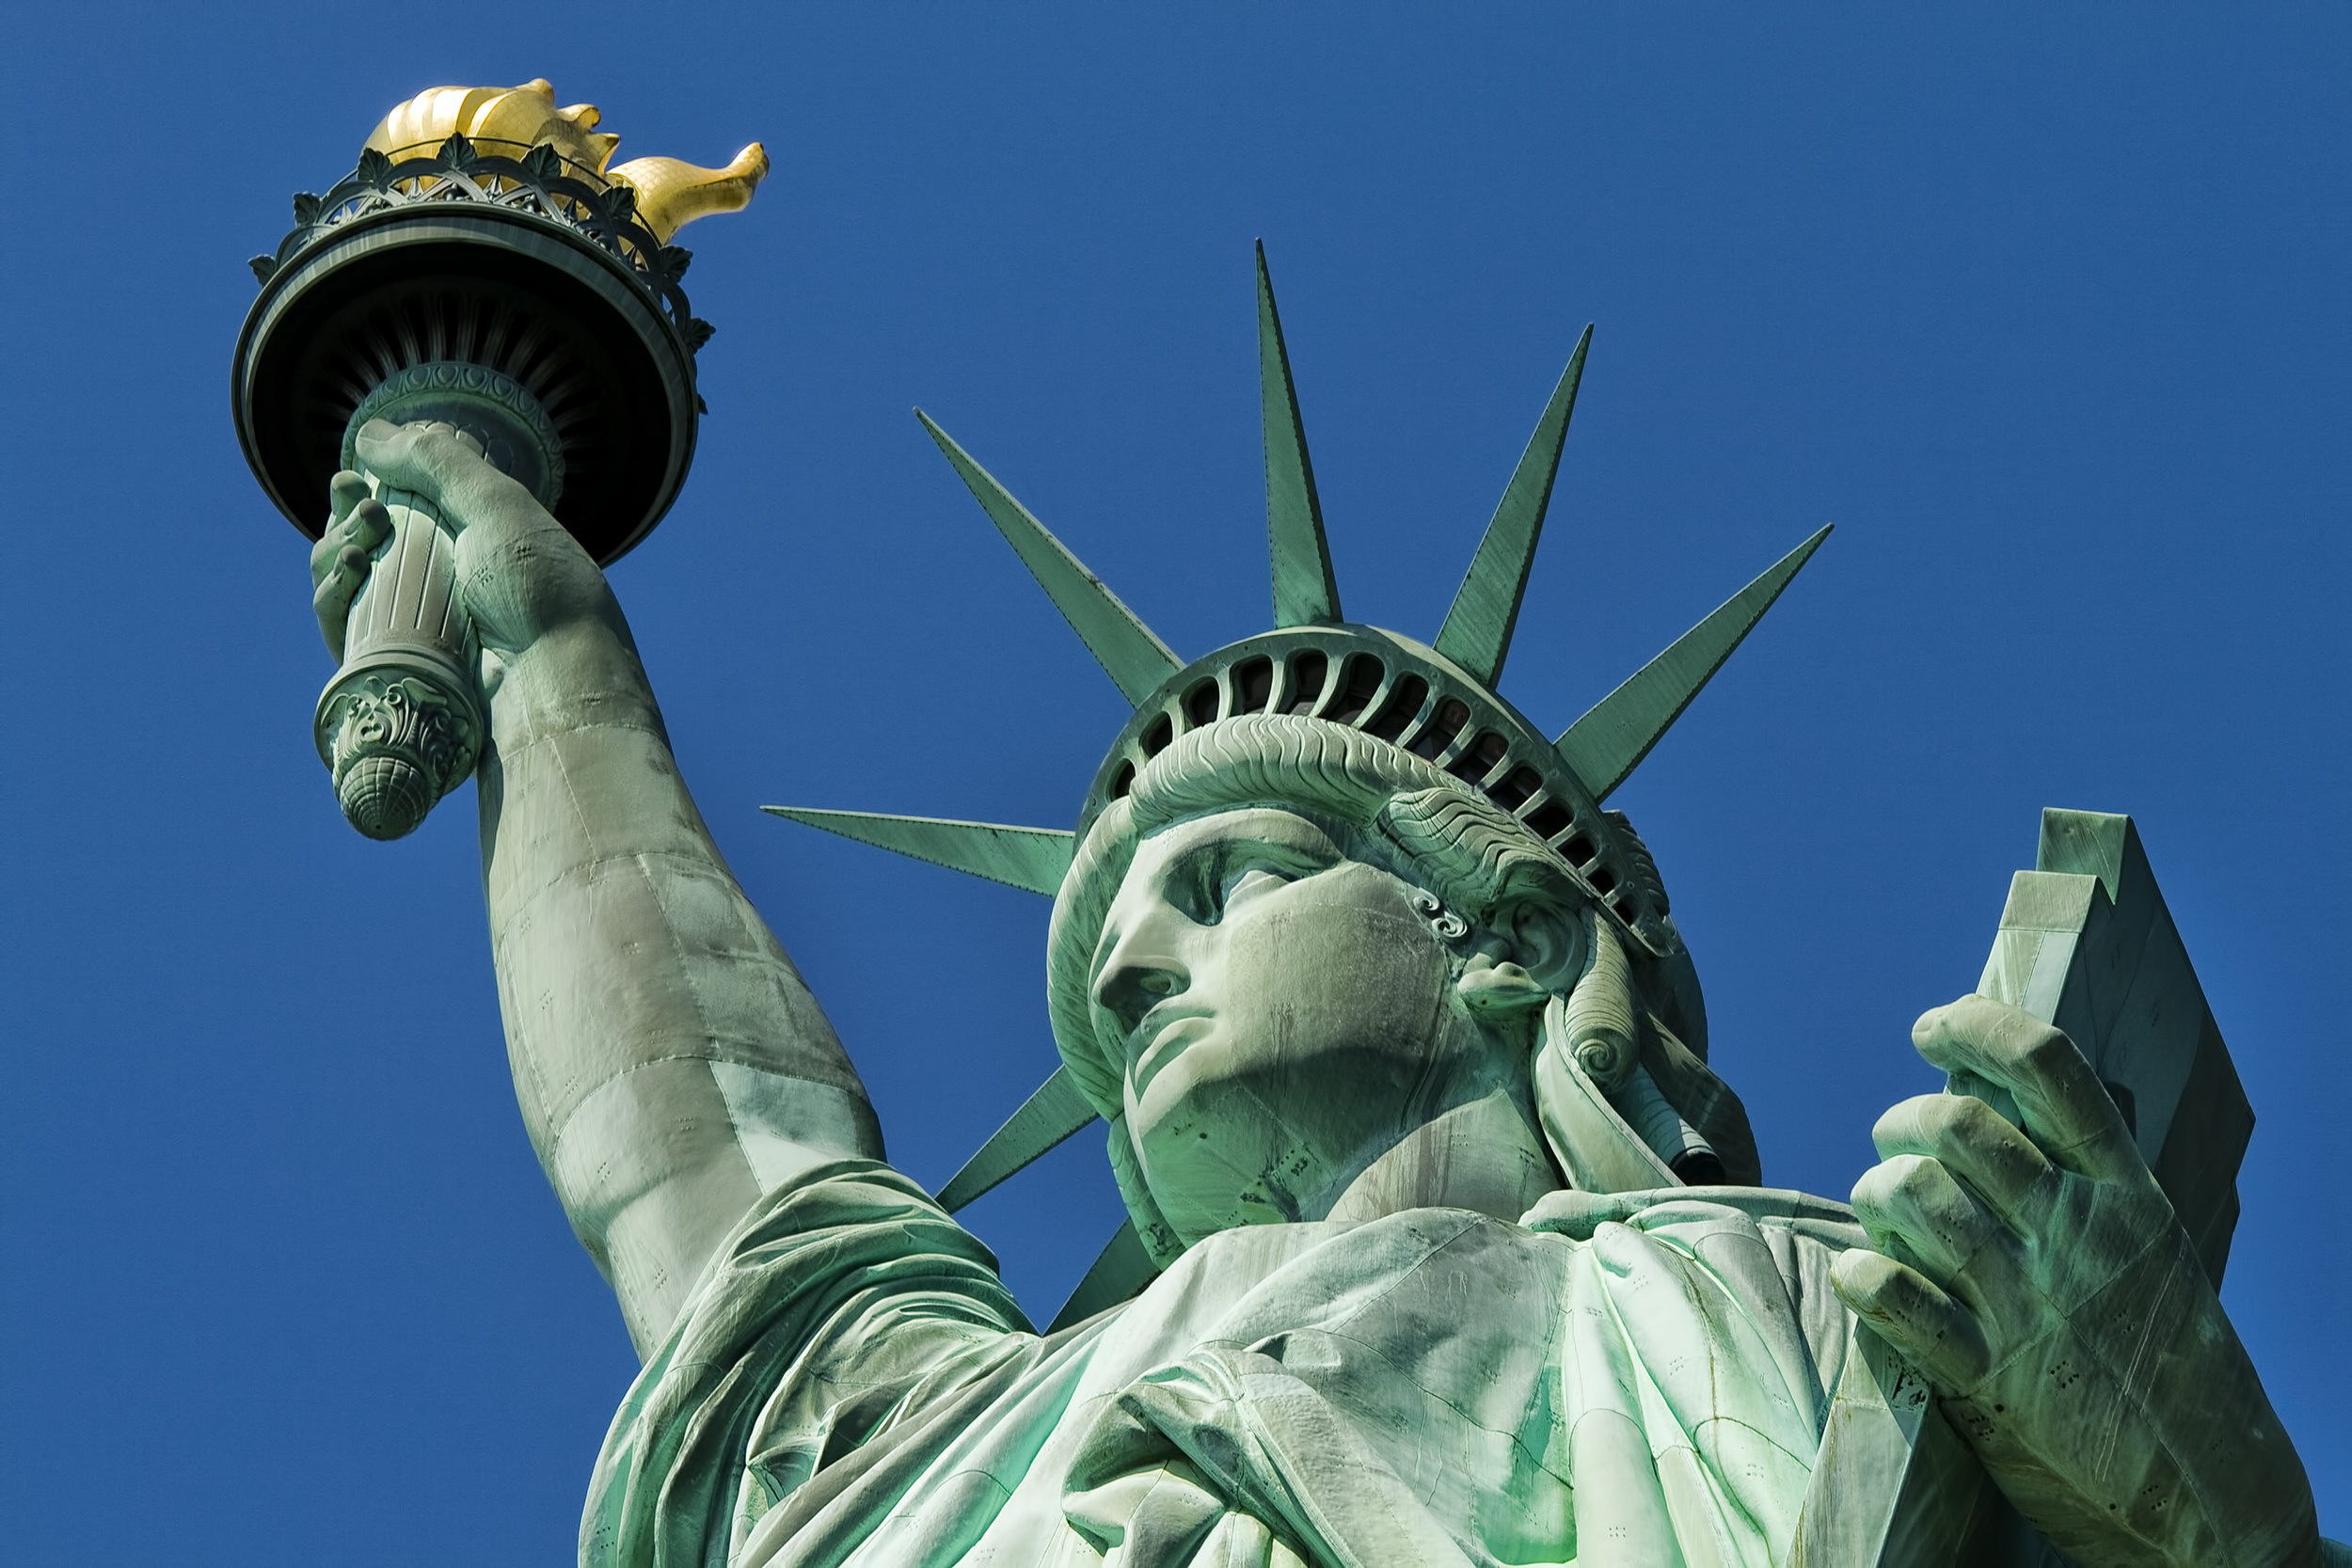 Идеал демократии. Статуя свободы (Statue of Liberty).. США Нью-Йорк статуя свободы. НЬЮЙОРК статцуя свободы. Остров Эллис и статуя свободы.